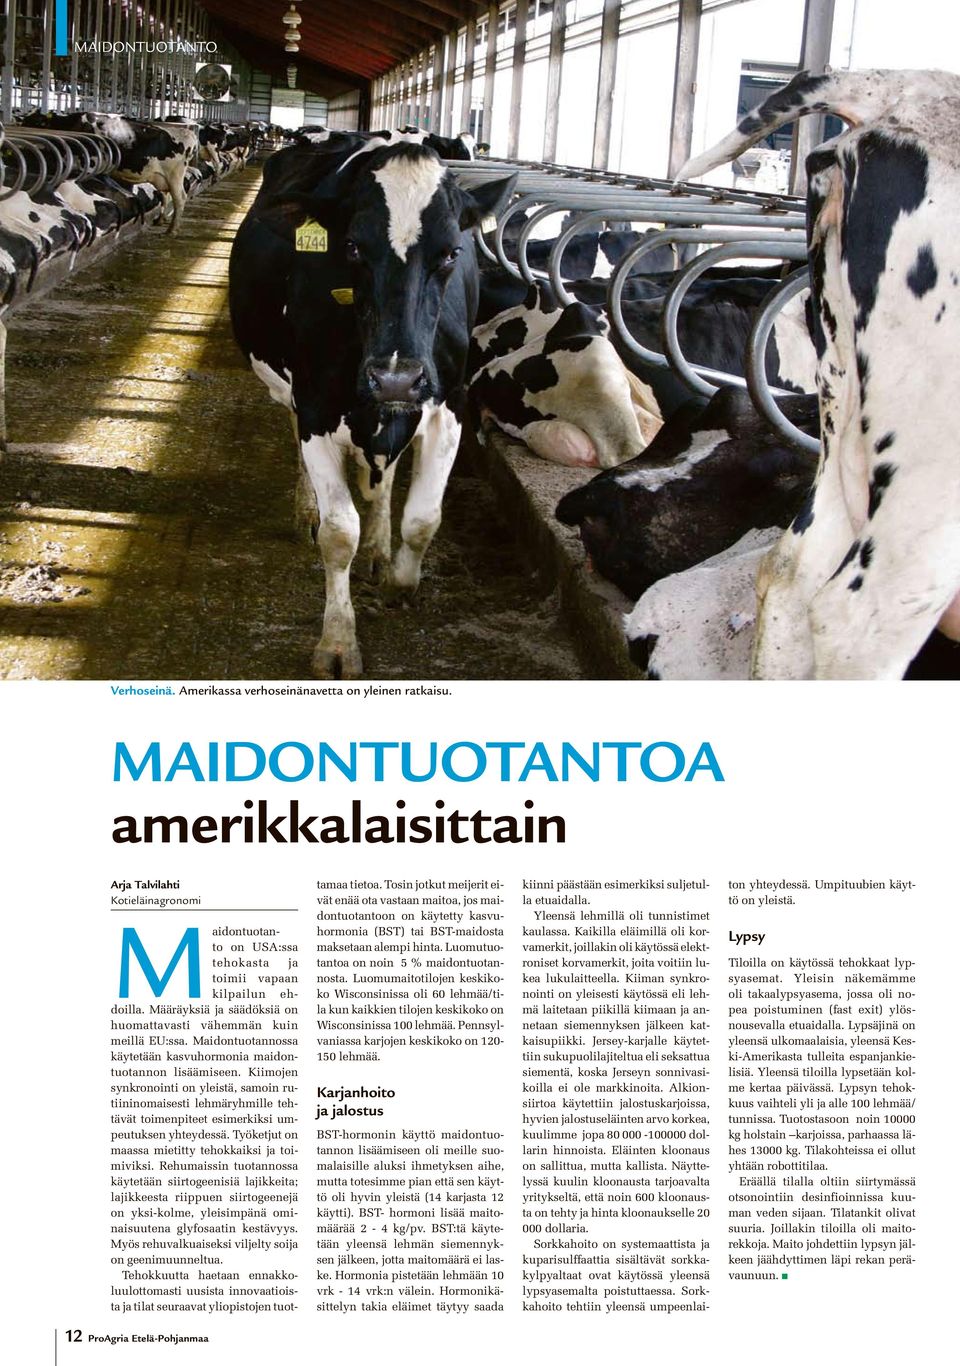 Määräyksiä ja säädöksiä on huomattavasti vähemmän kuin meillä EU:ssa. Maidontuotannossa käytetään kasvuhormonia maidontuotannon lisäämiseen.